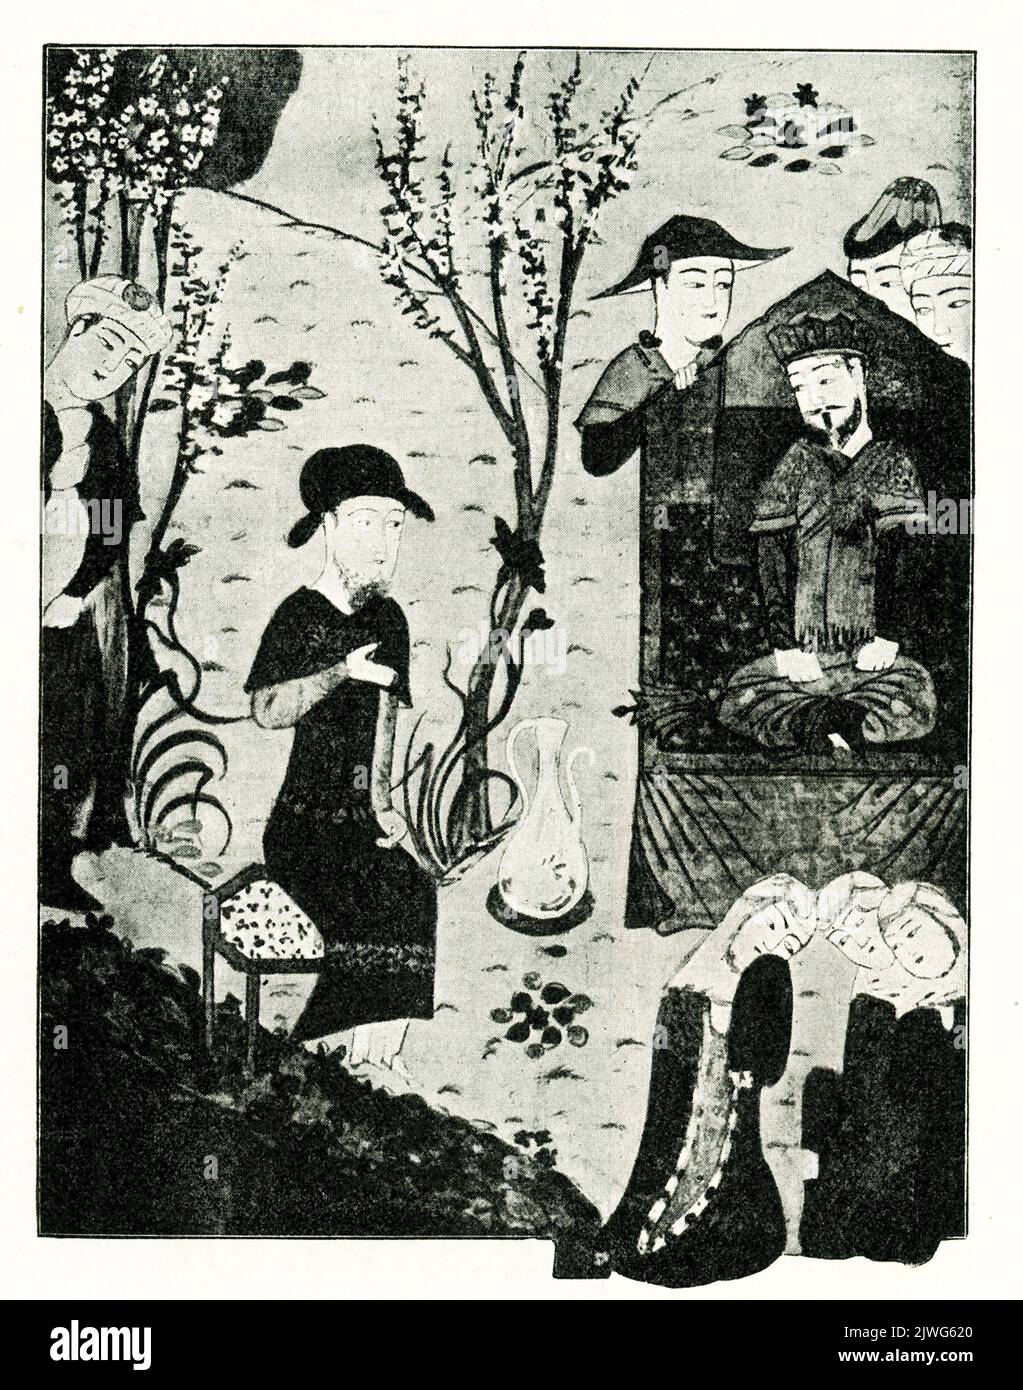 La légende de cette image de 1910 est la suivante : « le souverain mongol Odogei Khan [troisième] fils de Gengis Khan—miniature d'une collection à Paris » le général mongol et homme d'État Kublai Khan (également orthographié Khubilai Khan) était le petit-fils de Gengis Khan. Kublai Khan (v.1215-d. 1294) a conquis la Chine et a fondé la dynastie Yuan, ou Mongol, en Chine. Ögedei Khan (aussi Ogotai et Oktay) est né c. 1186 – et mort 1241. Il fut le deuxième grand Khan de l'Empire mongol en succédant à son père. Il continua l'expansion de l'empire que son père avait commencé, et était le Grand Khan quand le Mongol Banque D'Images